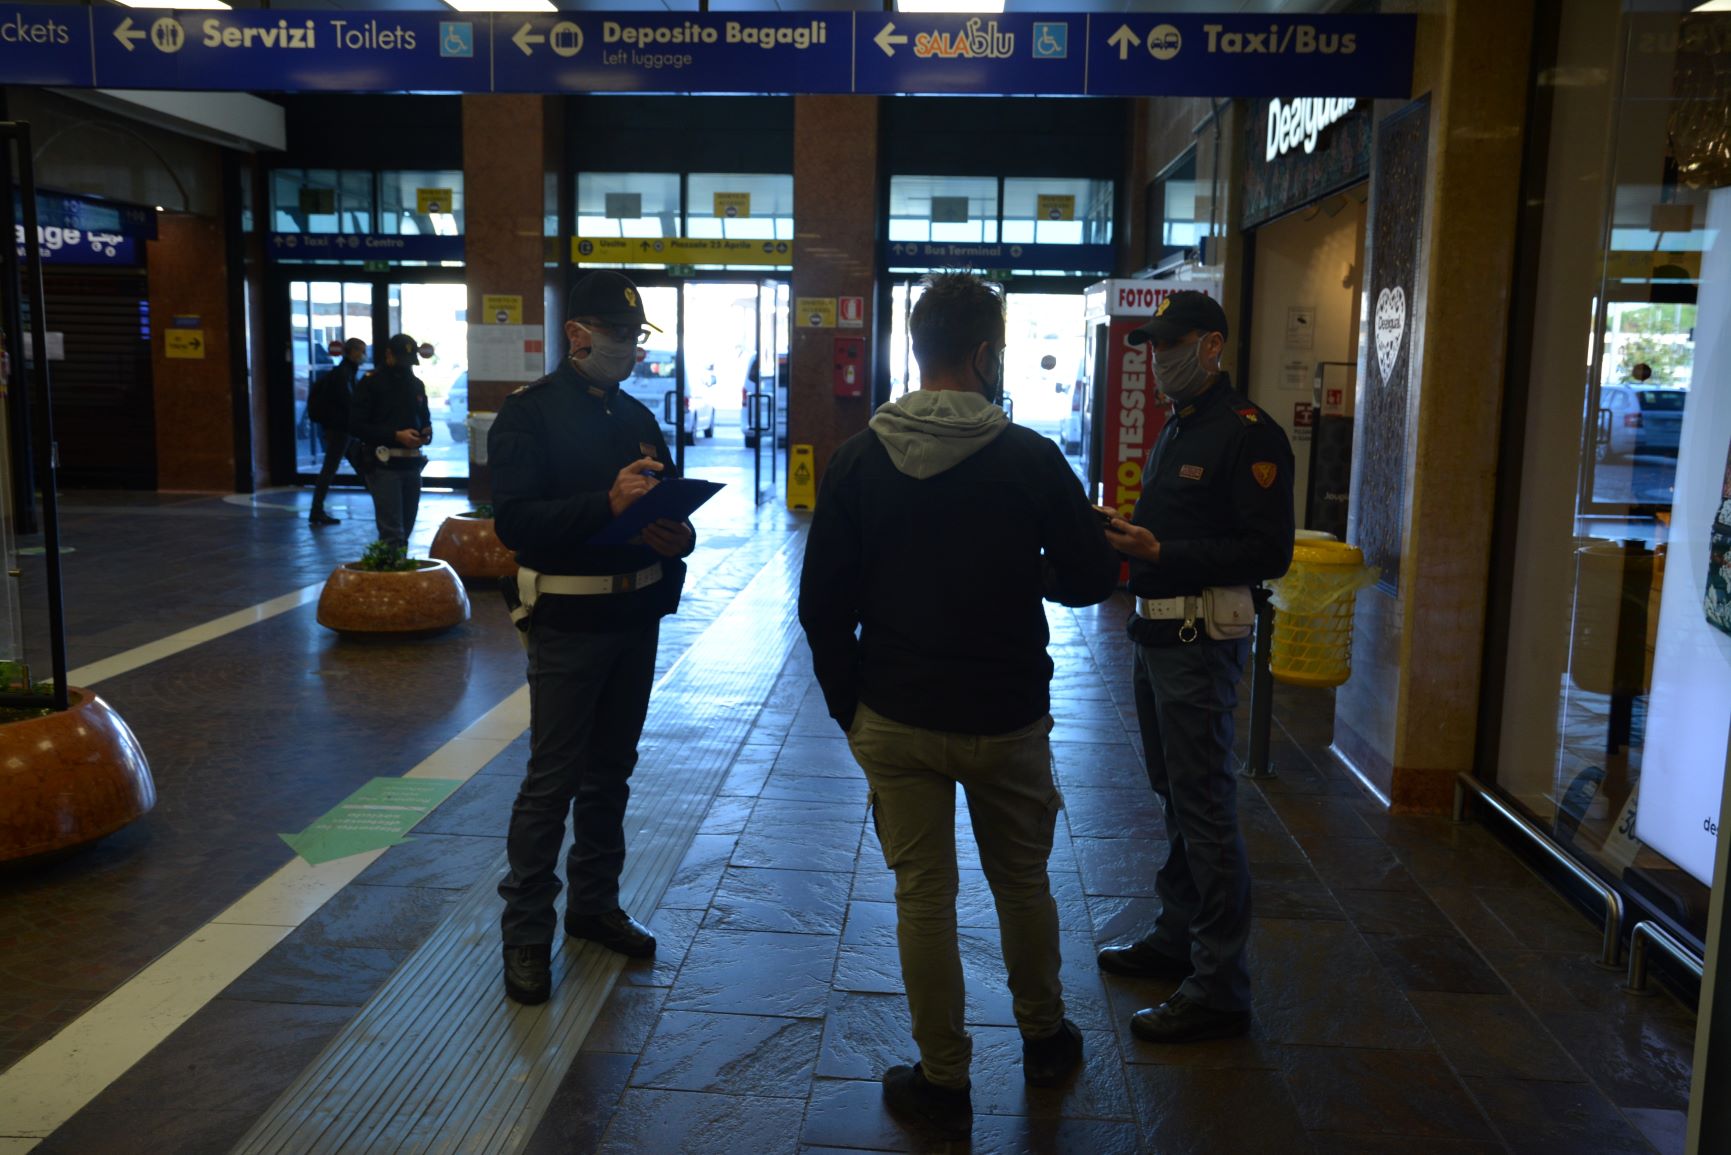 Rientra clandestinamente in Italia: arrestato nella stazione ferroviaria di Verona Porta Nuova dalla Polizia di Stato